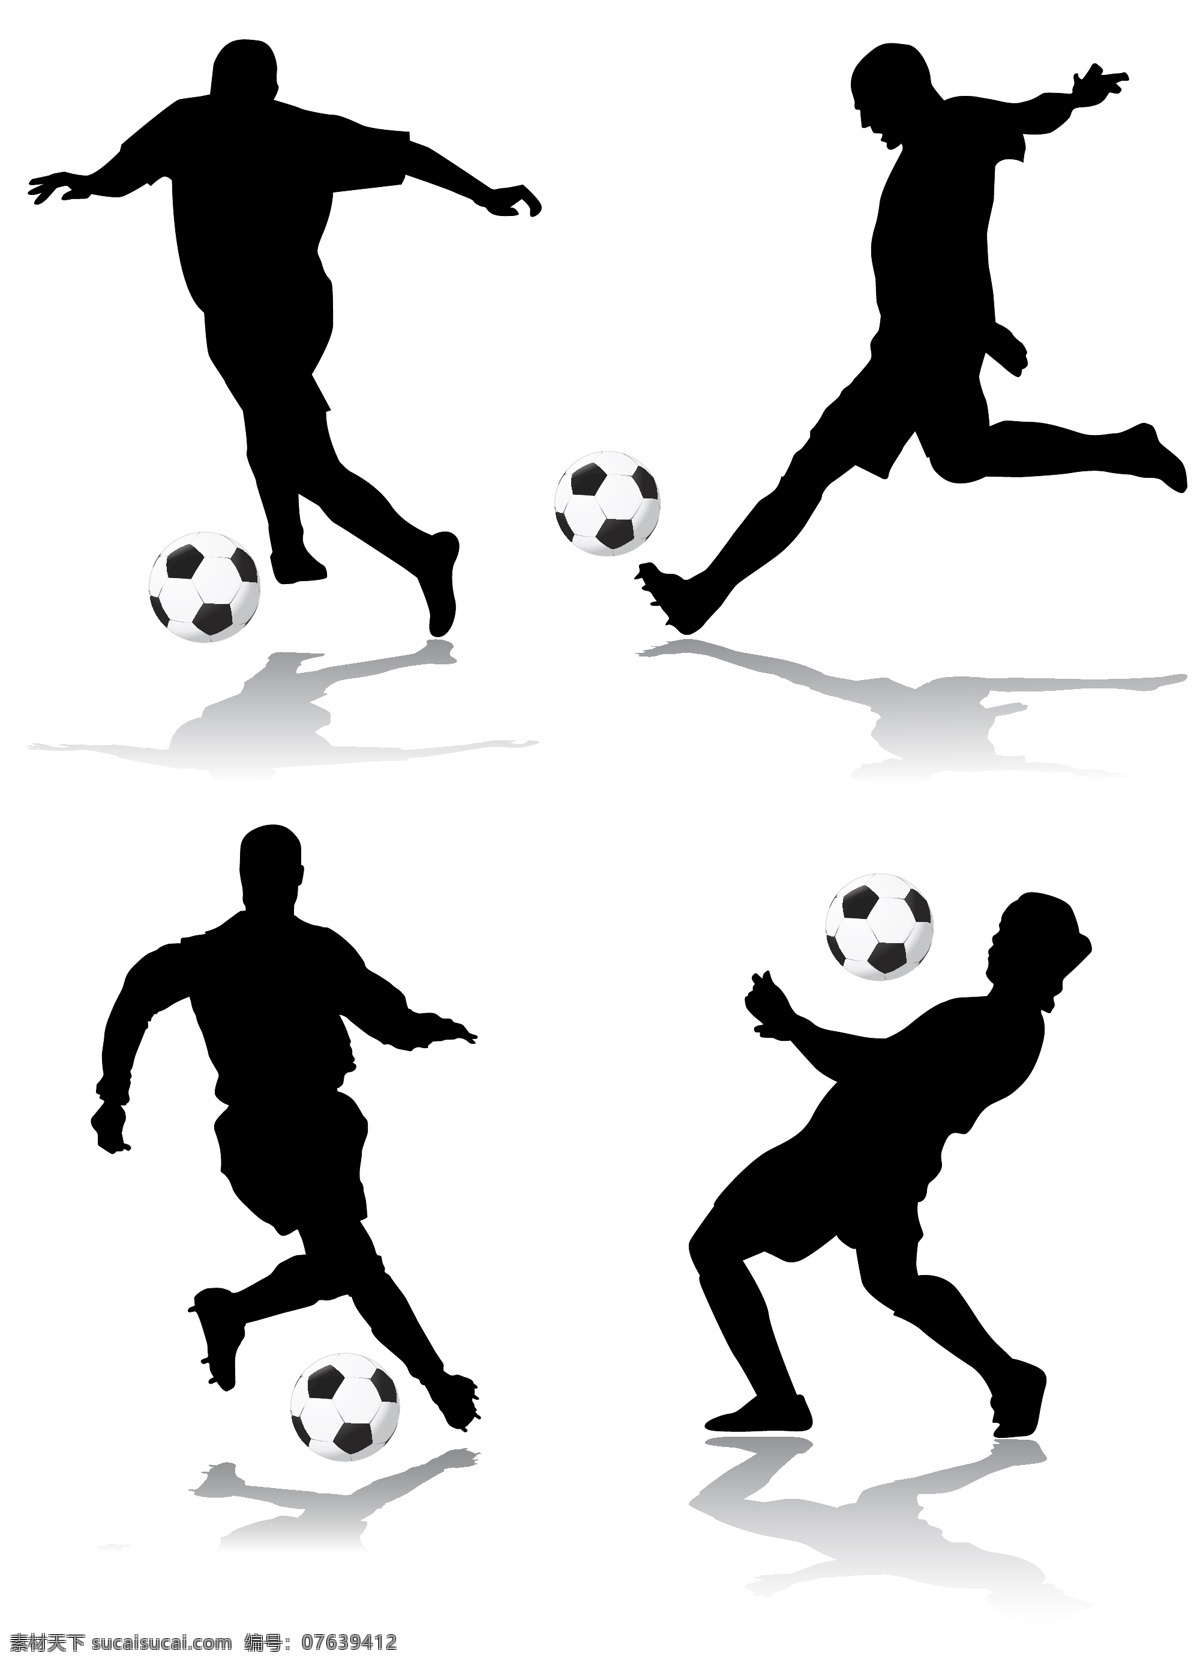 足球 运动 动作 人物 剪影 eps格式 人物剪影 矢量素材 体育运动 运动员 足球运动 矢量 控球 带球 矢量图 矢量人物